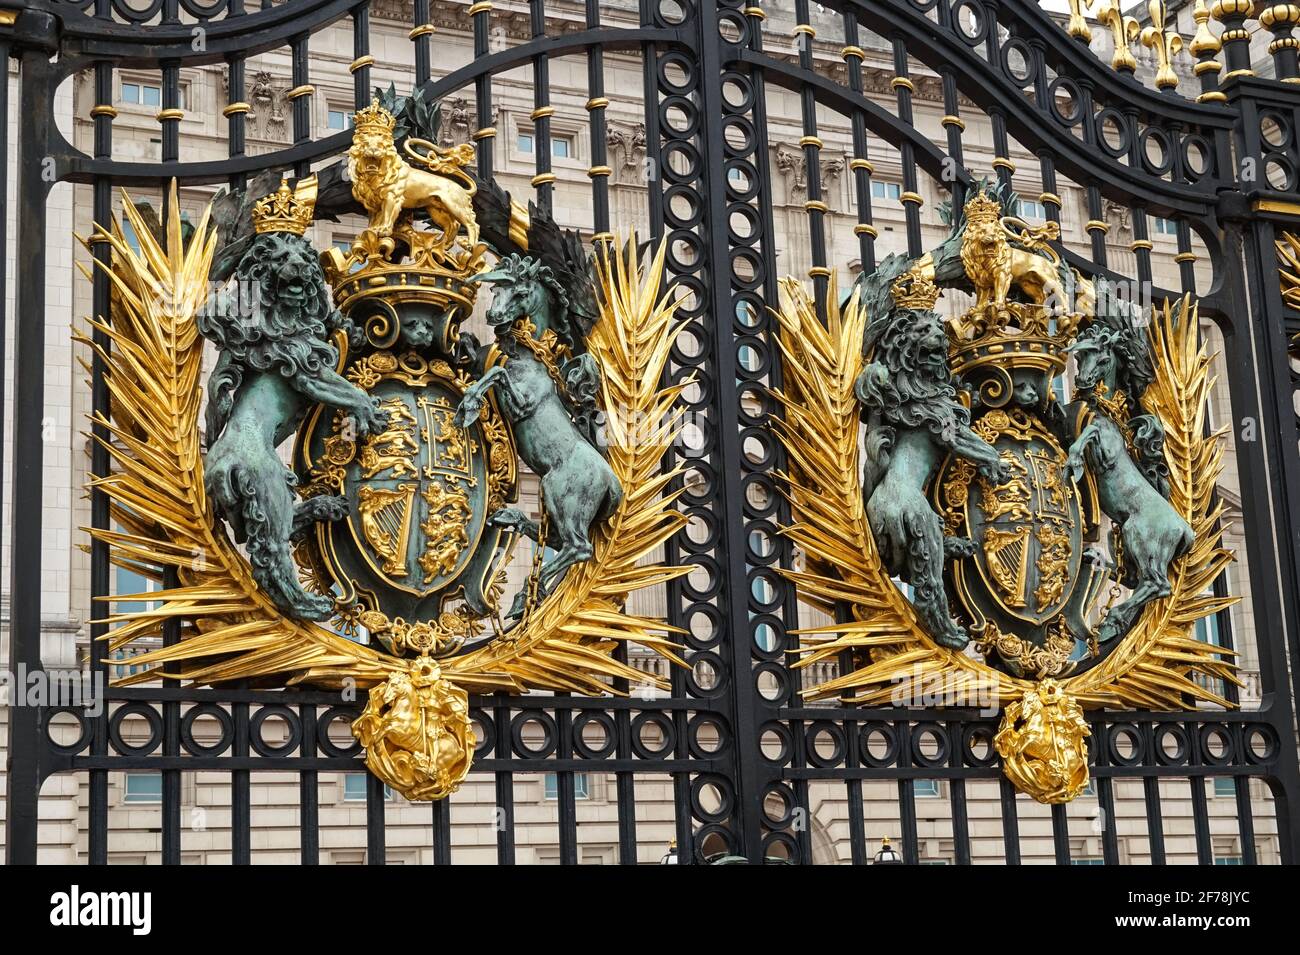 Royal Crest, Royal coat of arms of the United Kingdom on Buckingham Palace gate, London England United Kingdom UK Stock Photo